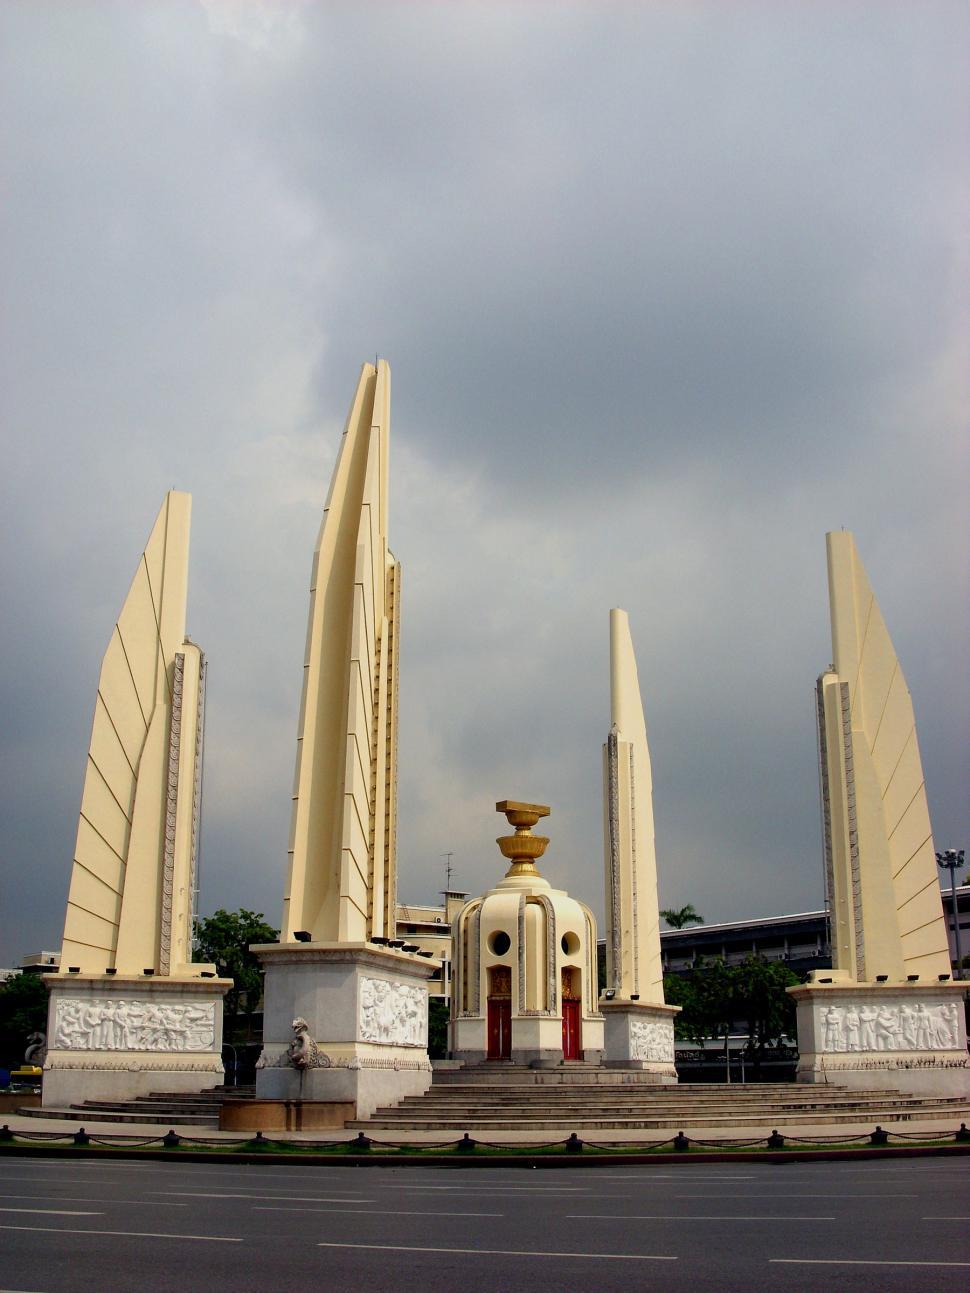 Free Image of Democracy Monument, Bangkok 